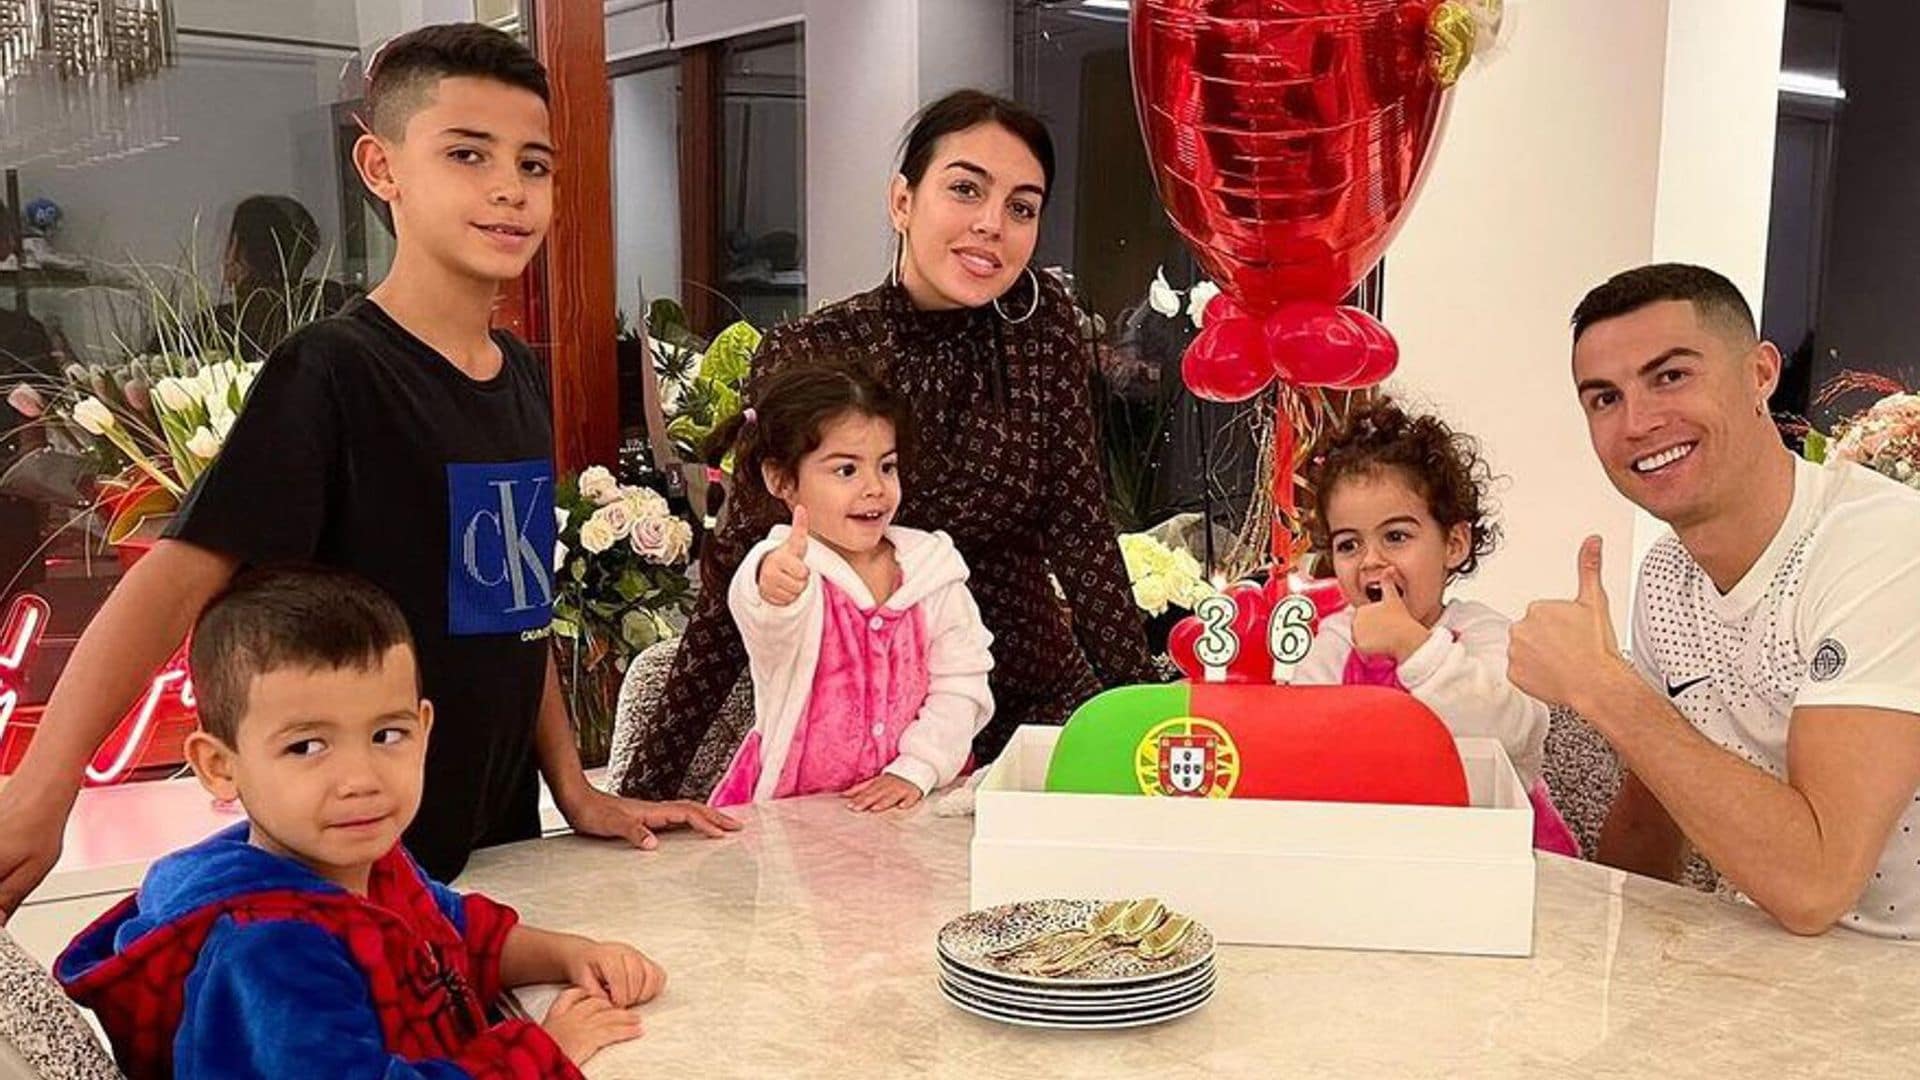 El festejo familiar de Cristiano Ronaldo con Georgina Rodríguez y sus hijos